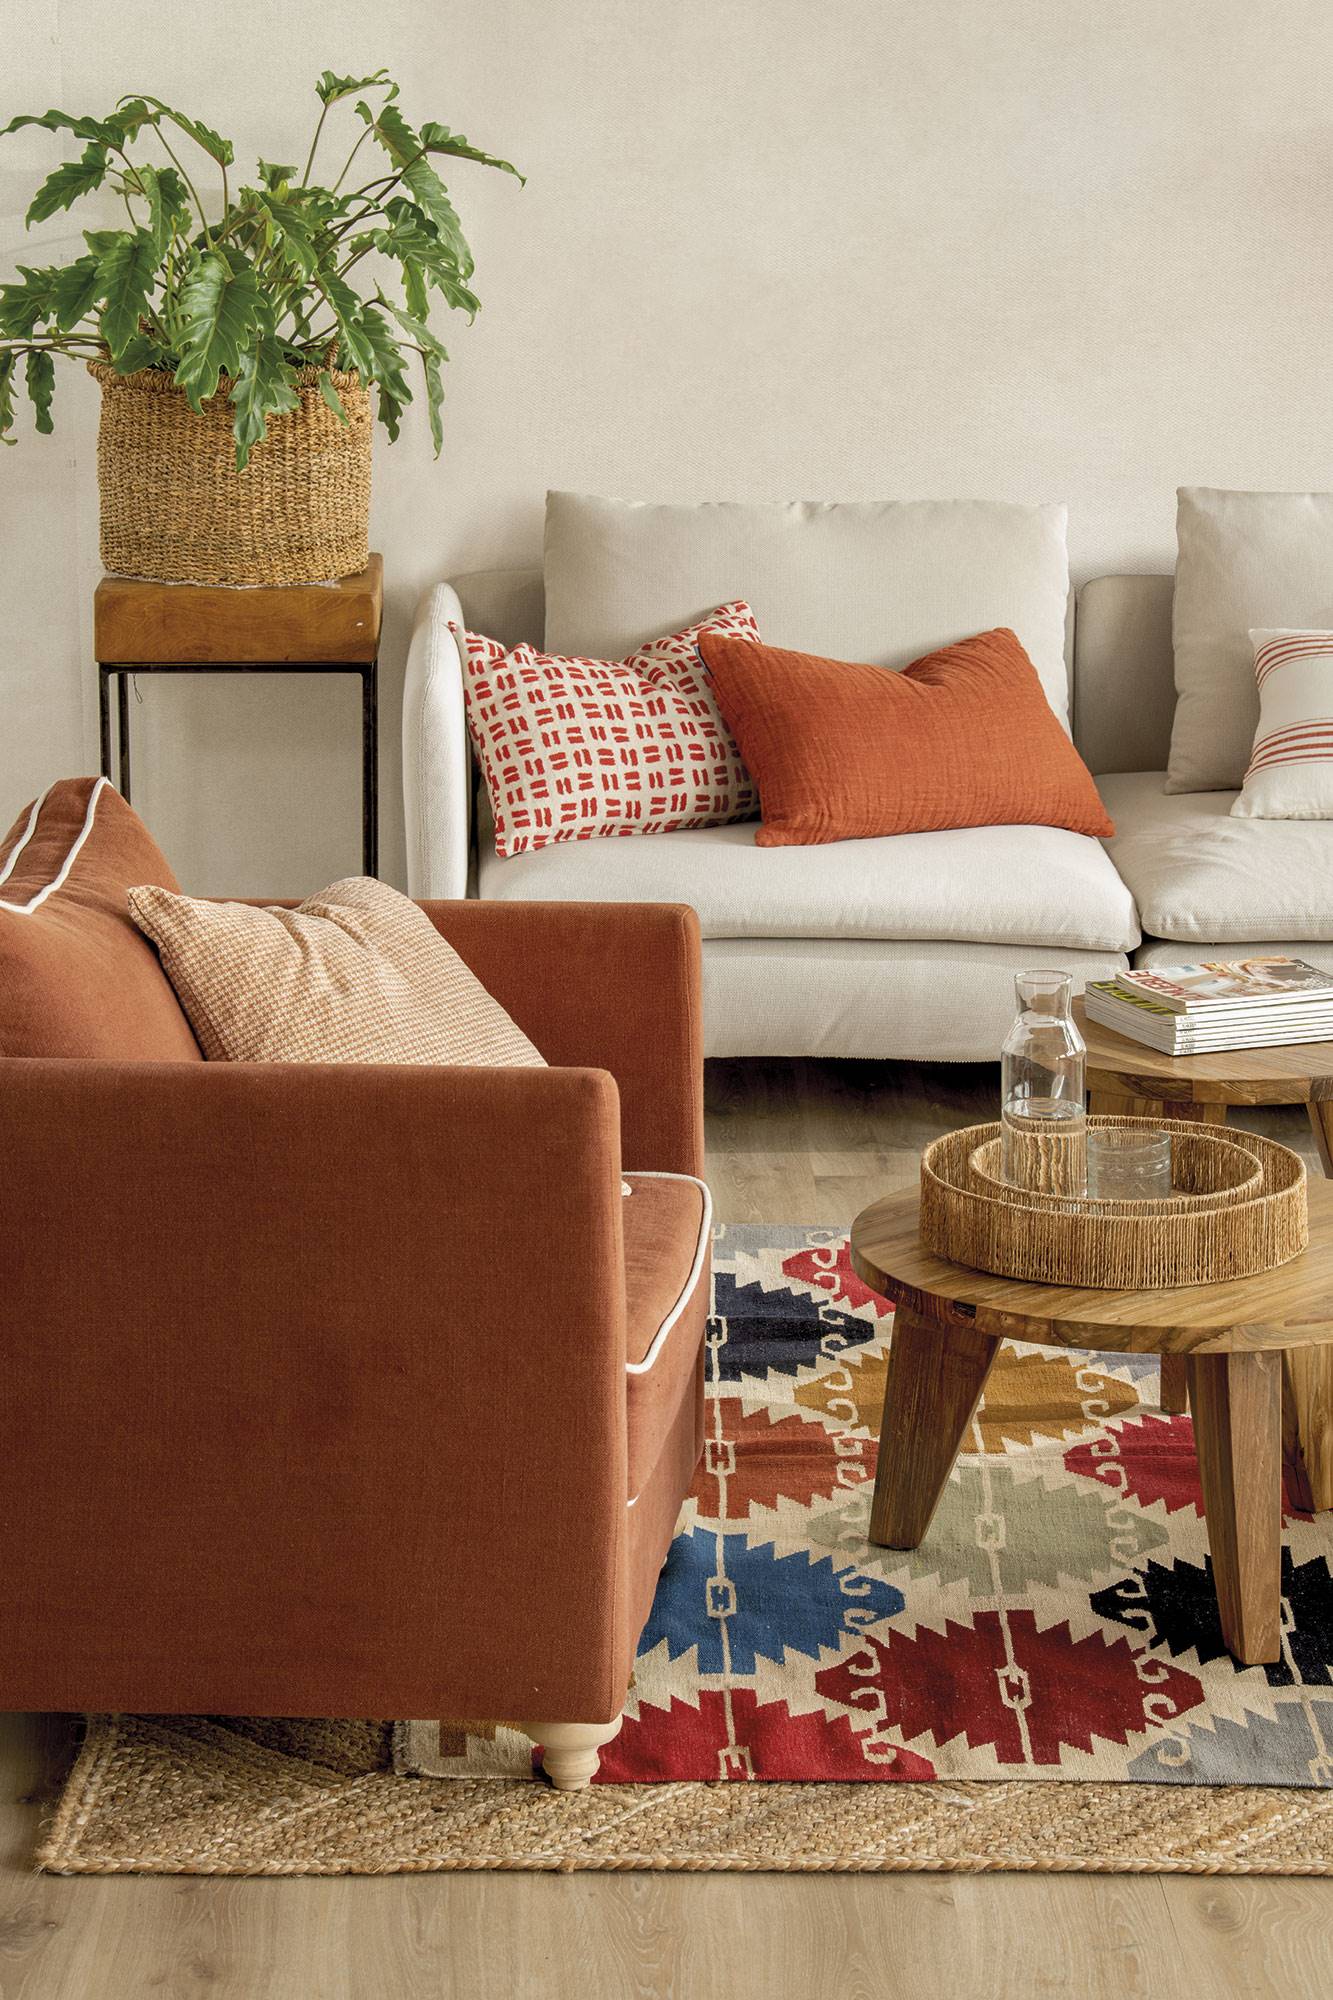 Butaca teja sobre alfombra de fibras y kilim con rombos de colores, mesas de centro de madera y sofá tapizado en blanco.